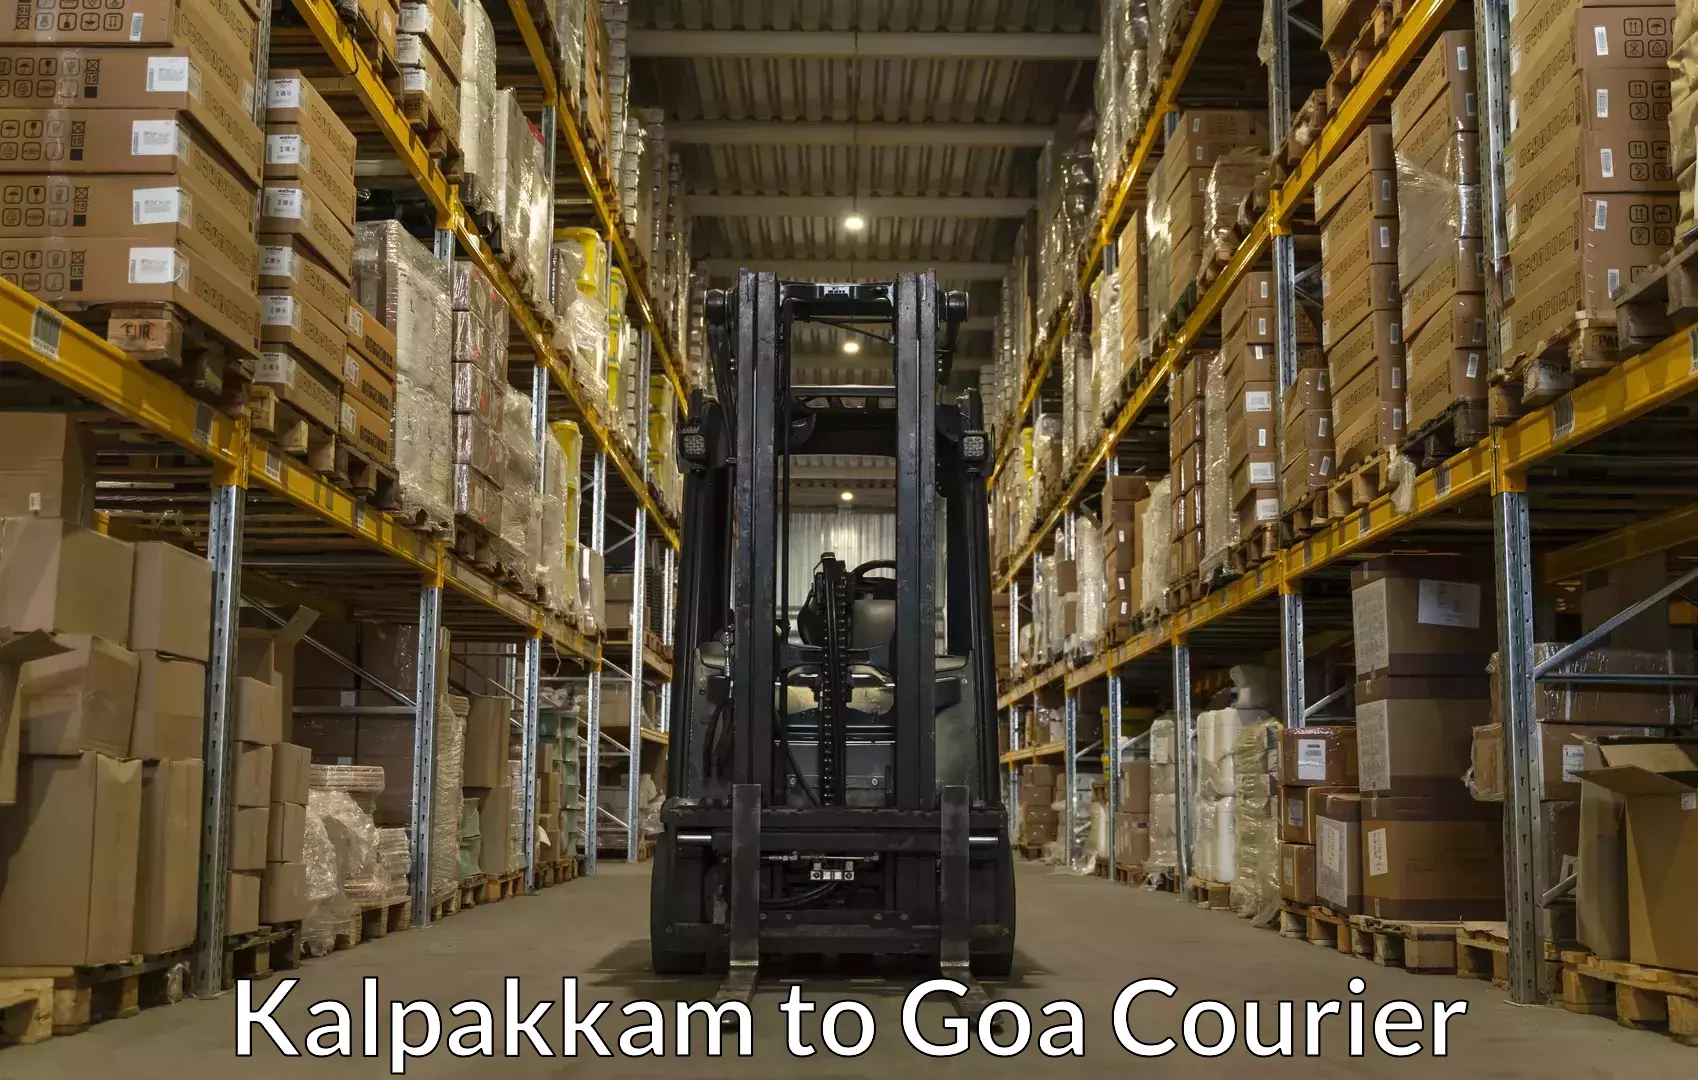 Baggage shipping schedule Kalpakkam to Goa